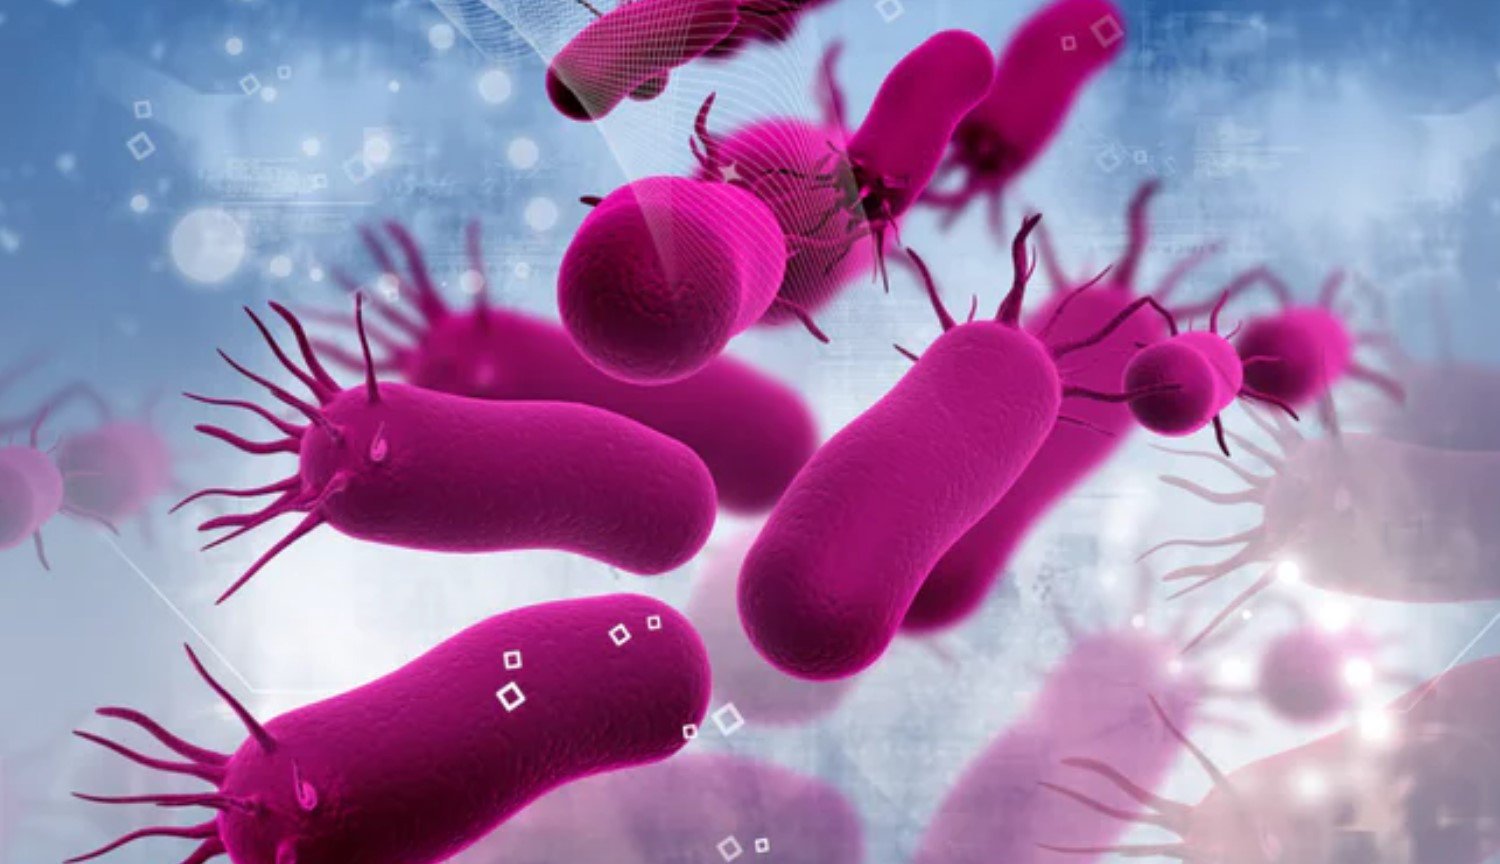 Zombie Modus: die Wissenschaftler entdeckten einen neuen Zustand der Bakterien